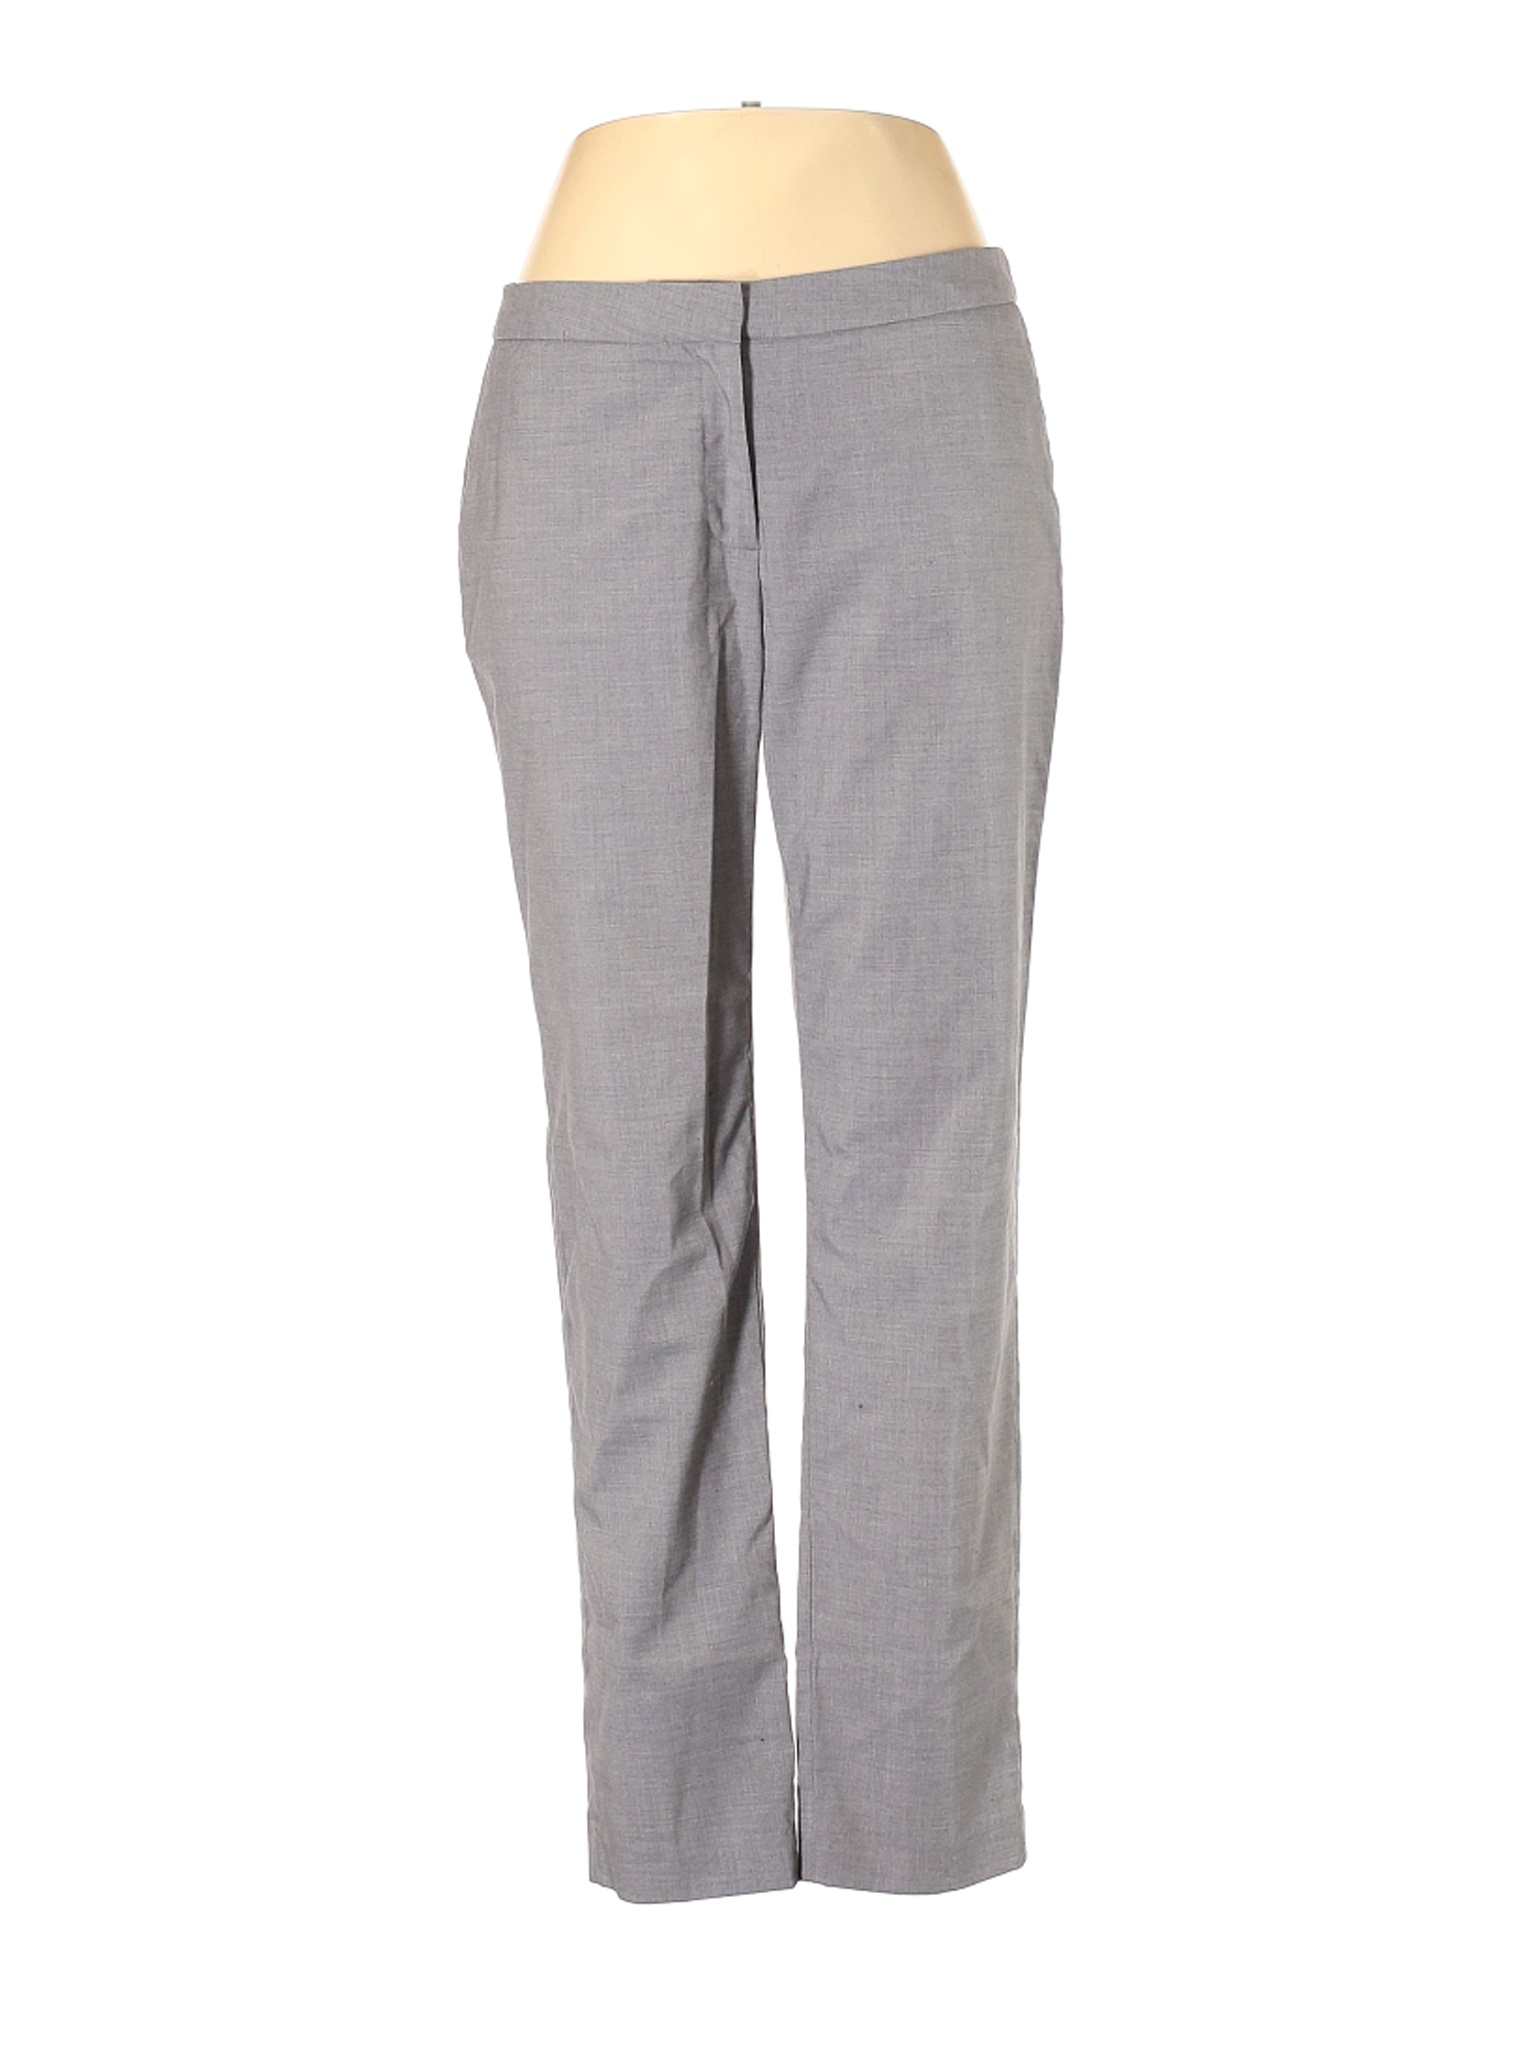 H&M Women Gray Dress Pants 12 | eBay